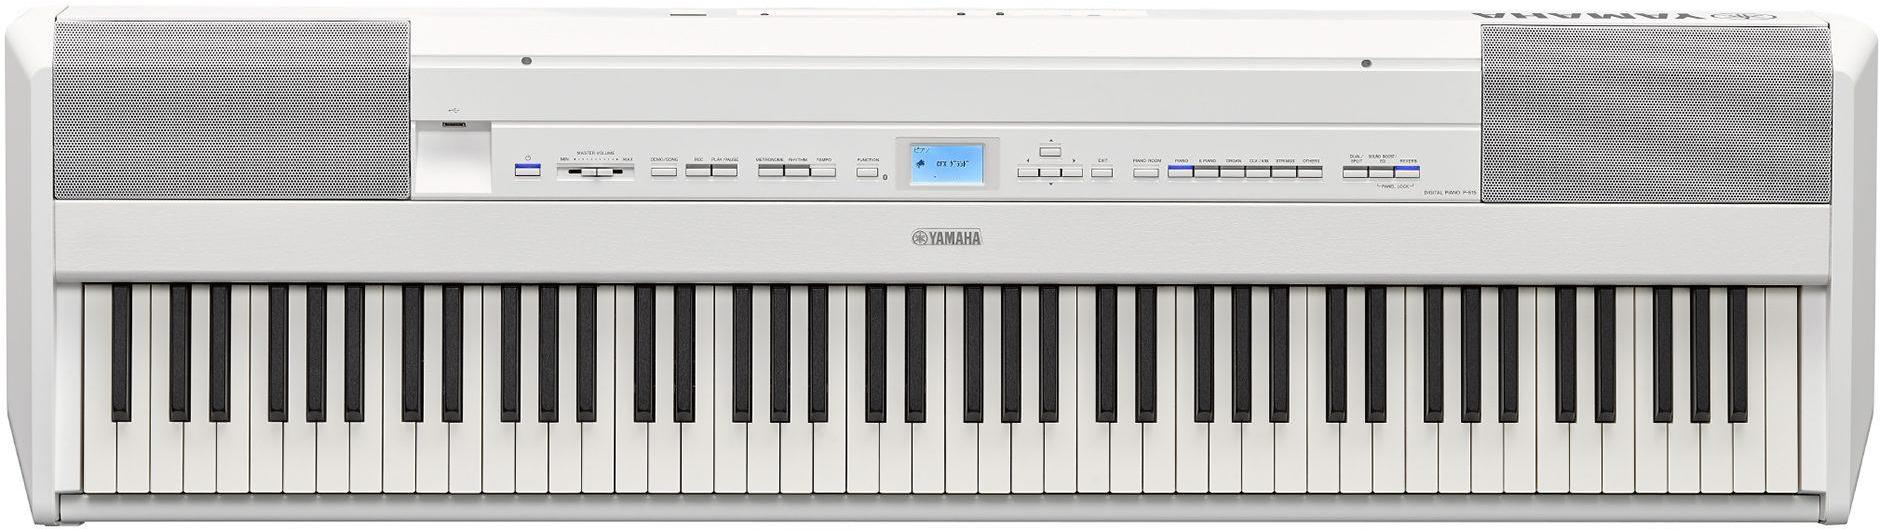 Piano digital portatil Yamaha P-515 - White